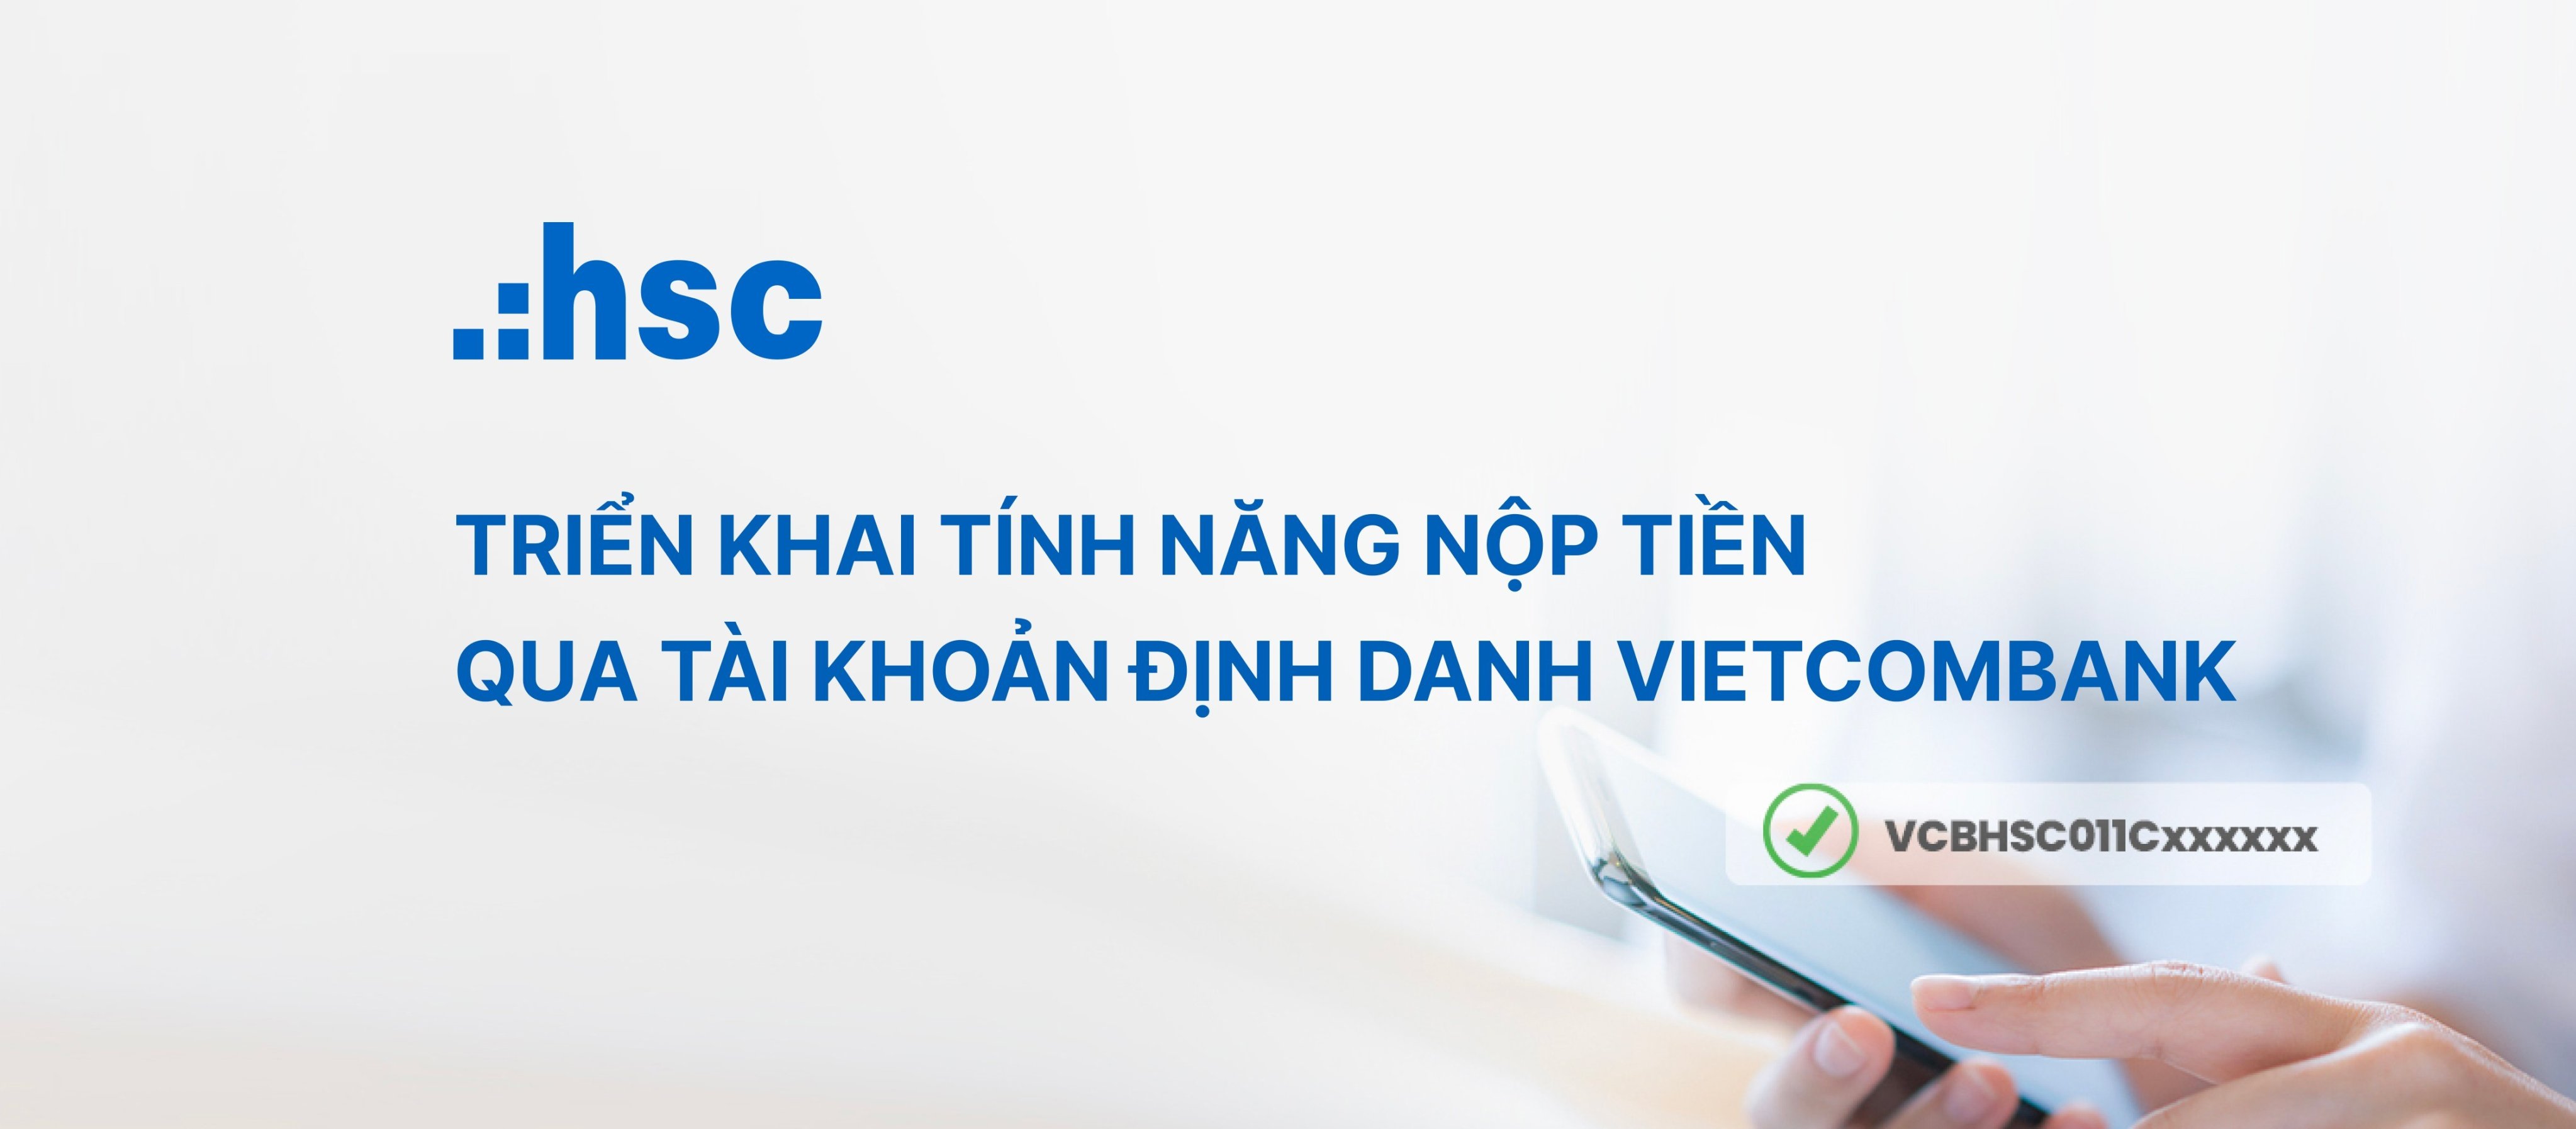 Triển khai tính năng nộp tiền qua tài khoản định danh Vietcombank